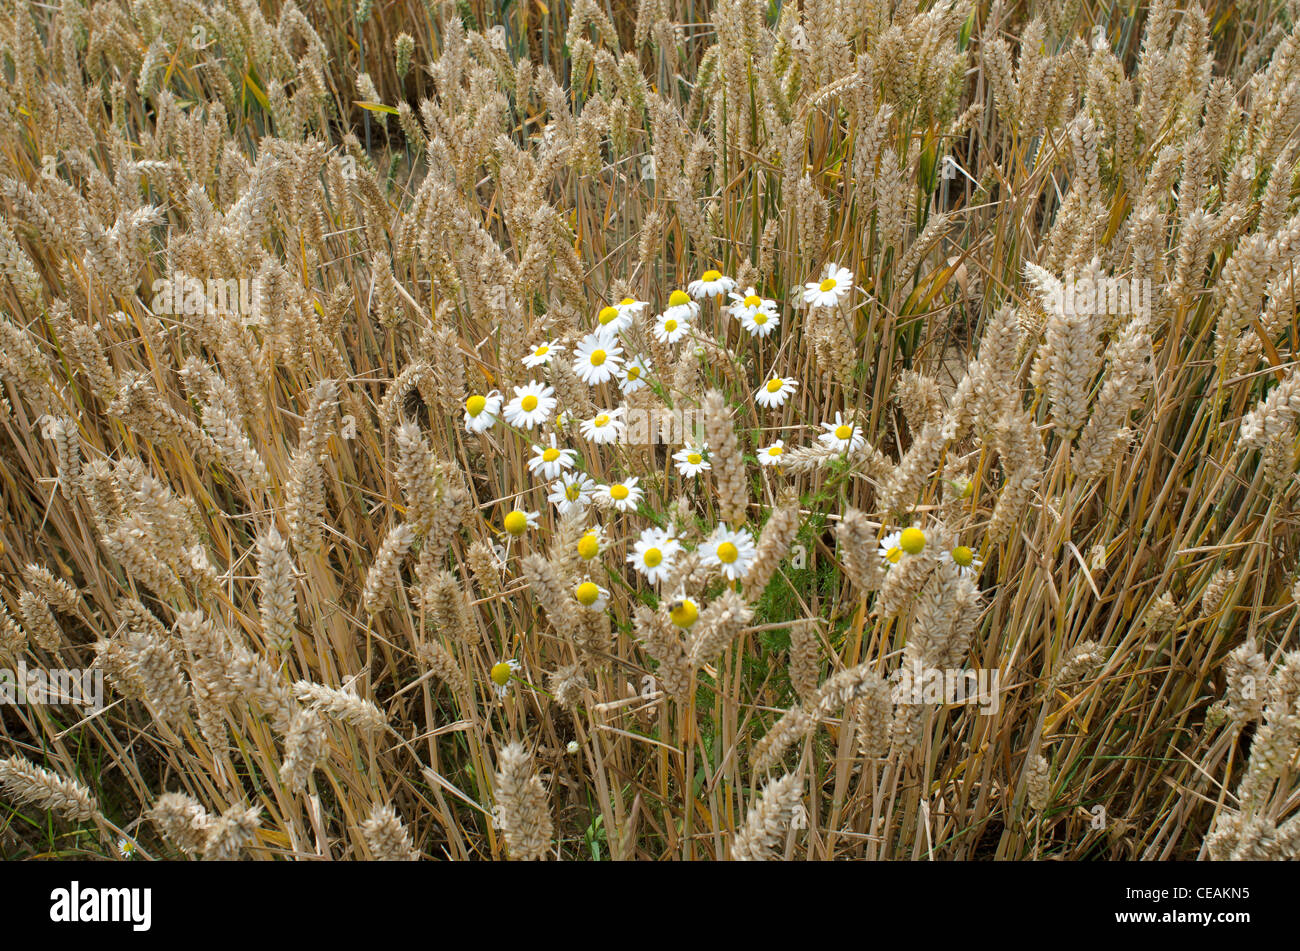 Ackerland Getreide ernten Landwirtschaft Warwickshire Midlands England uk Stockfoto